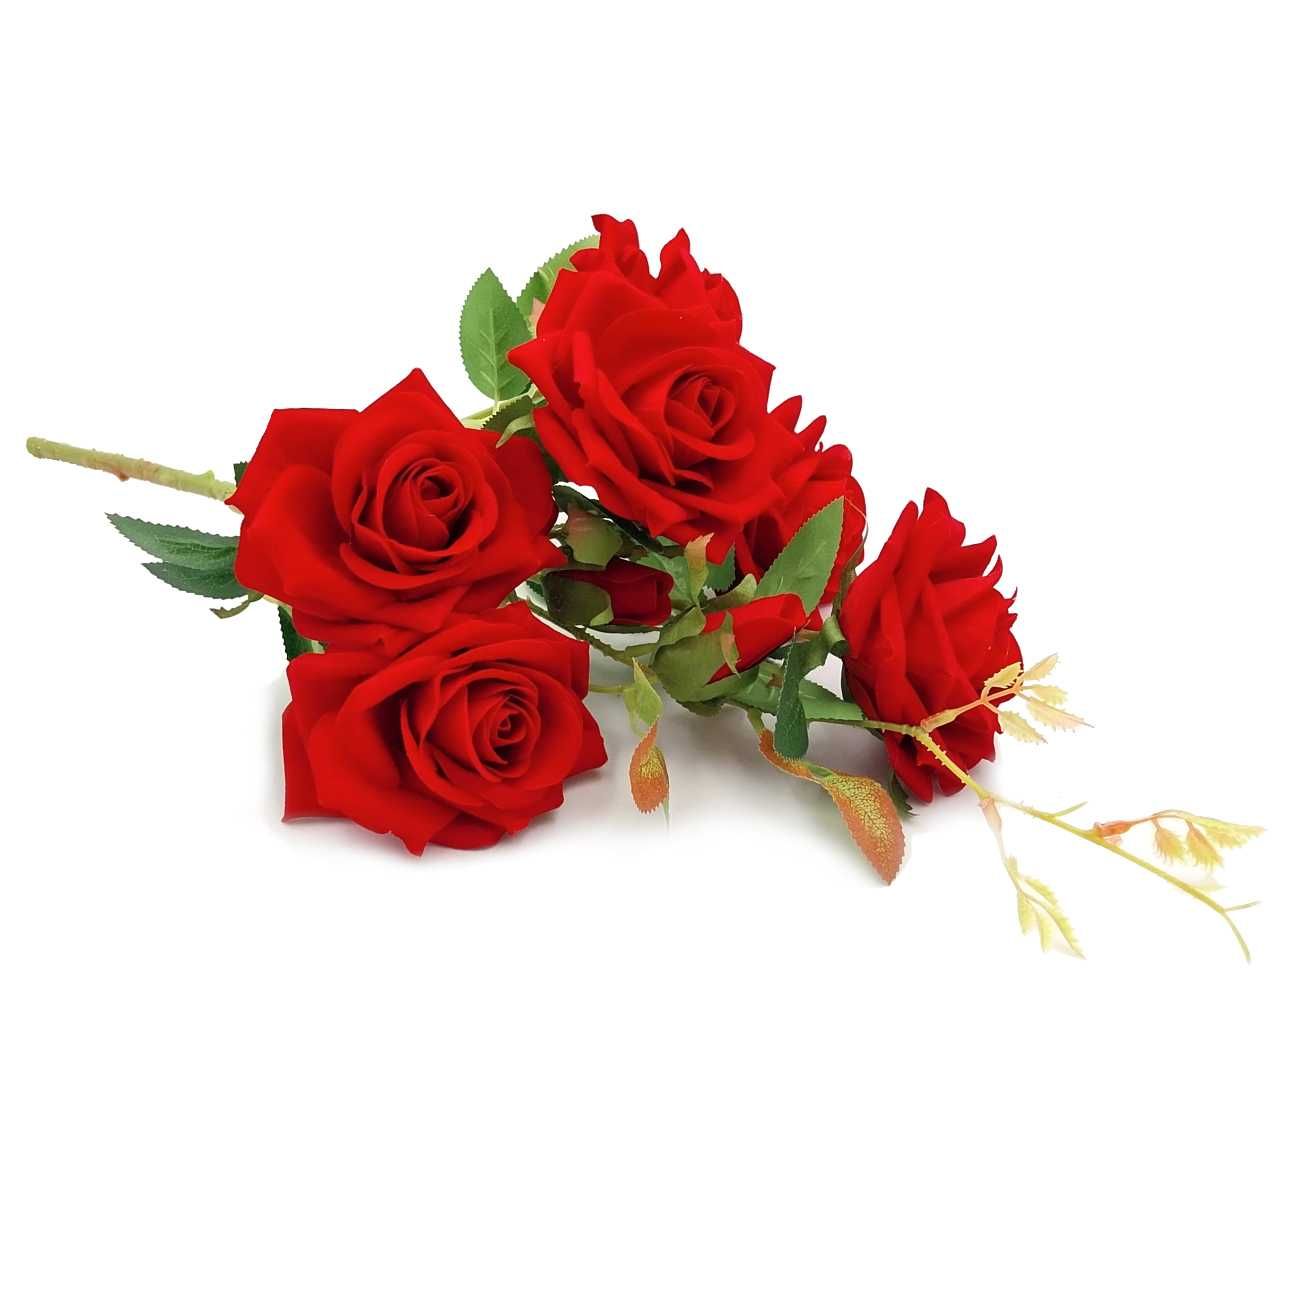 Róża czerwona gałązka 55cm bukiet 6szt sztuczne duże róże welurowe